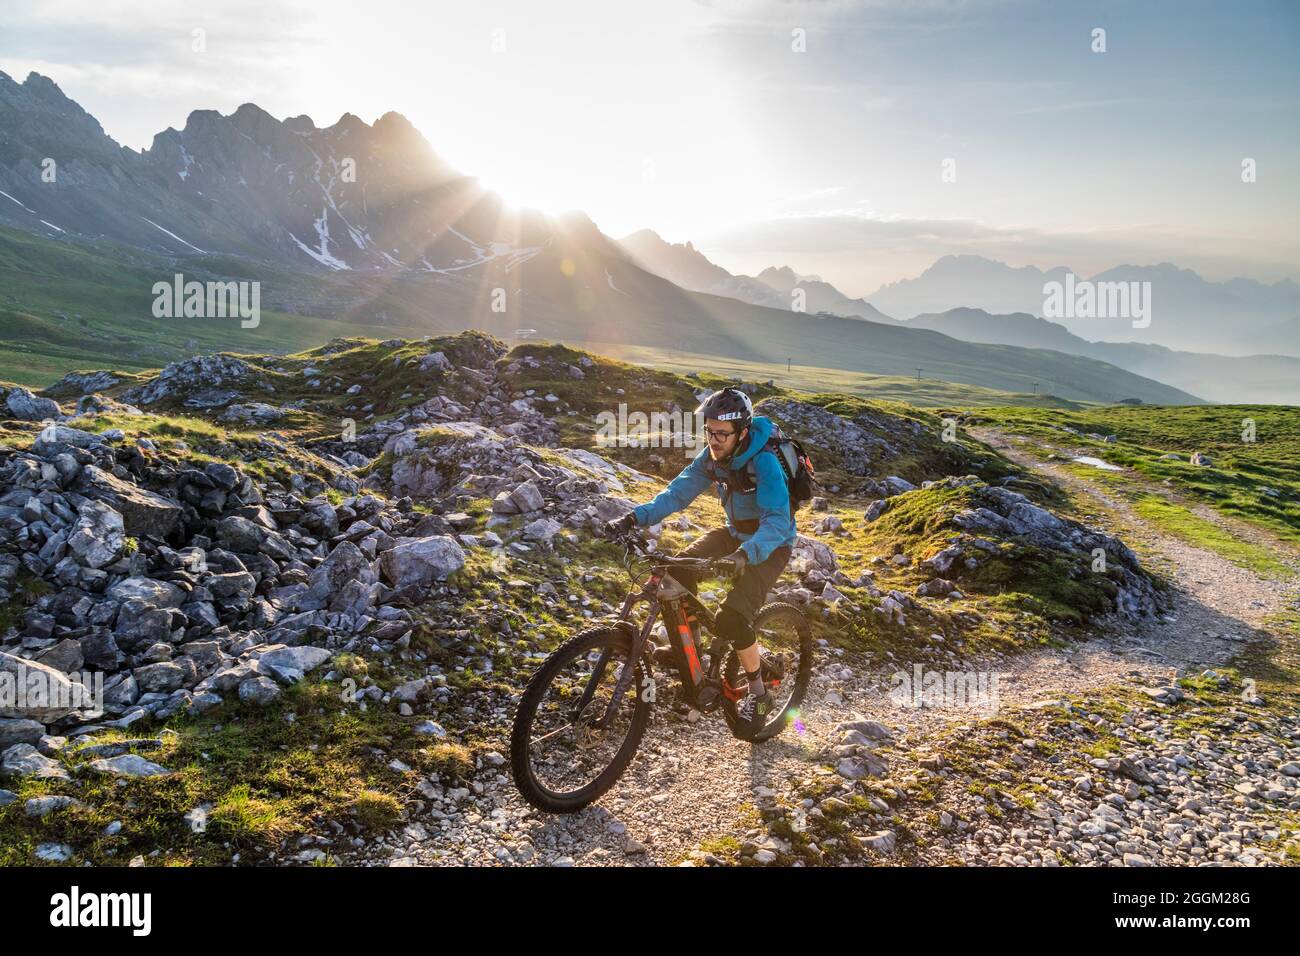 Dolomiten, Radfahrer mit E-Bikes auf Bergweg am passo di san pellegrino, moena, Provinz Trient, Trentino, Italien, Europa Stockfoto